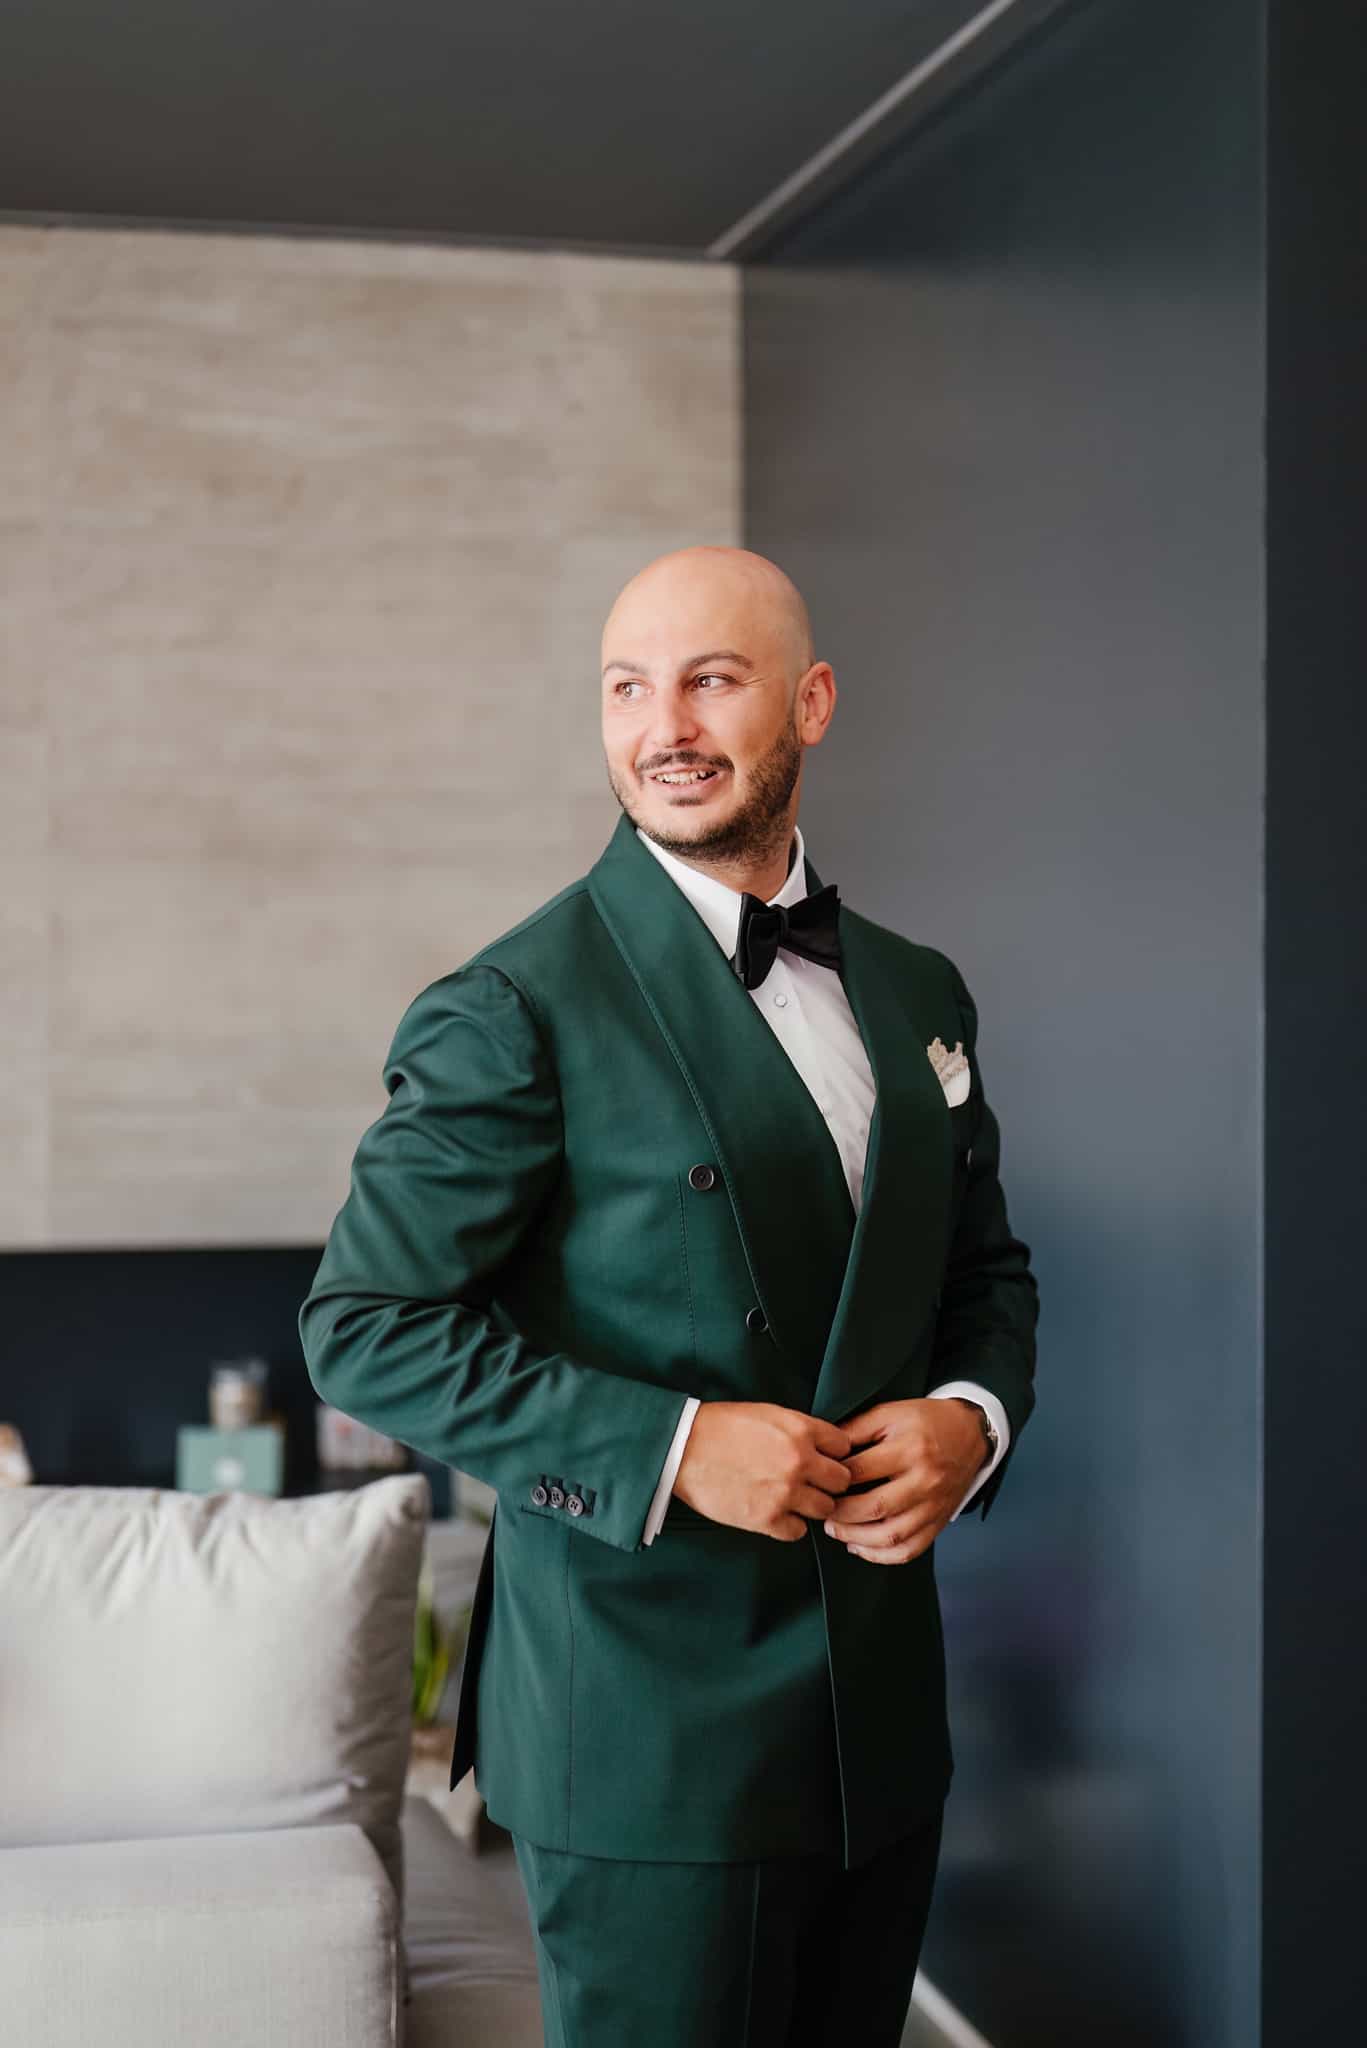 giacca-abito-sposo-papillon-groom-suit-preparativi-fotografo-matrimonio-teramo